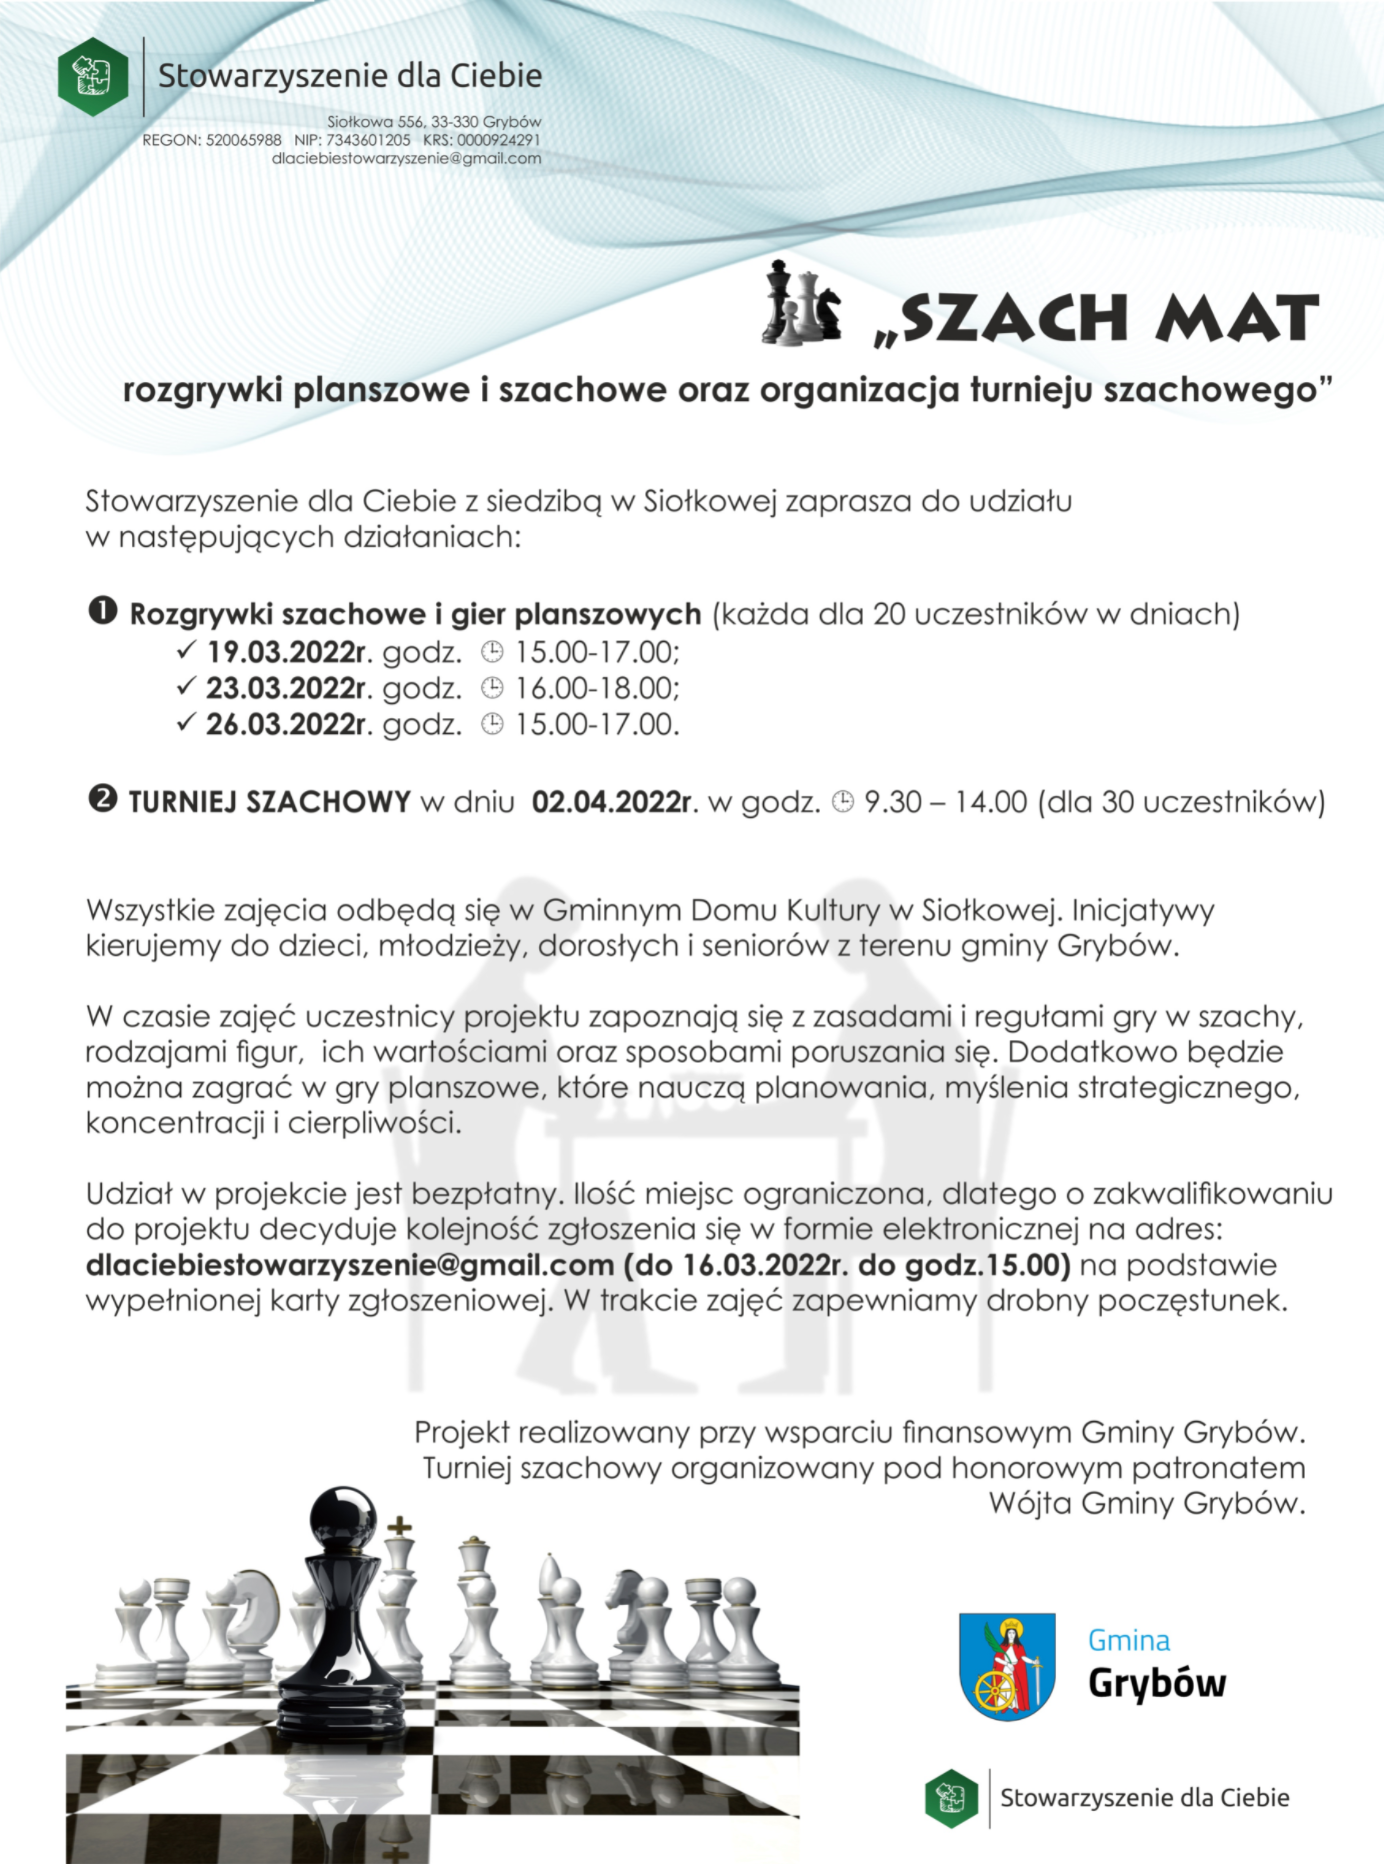 Stowarzyszenie dla Ciebie zaprasza na bezpłatne rozgrywki i turniej szachowy w Siołkowej - zgłoszenia do 16.03.2022r.